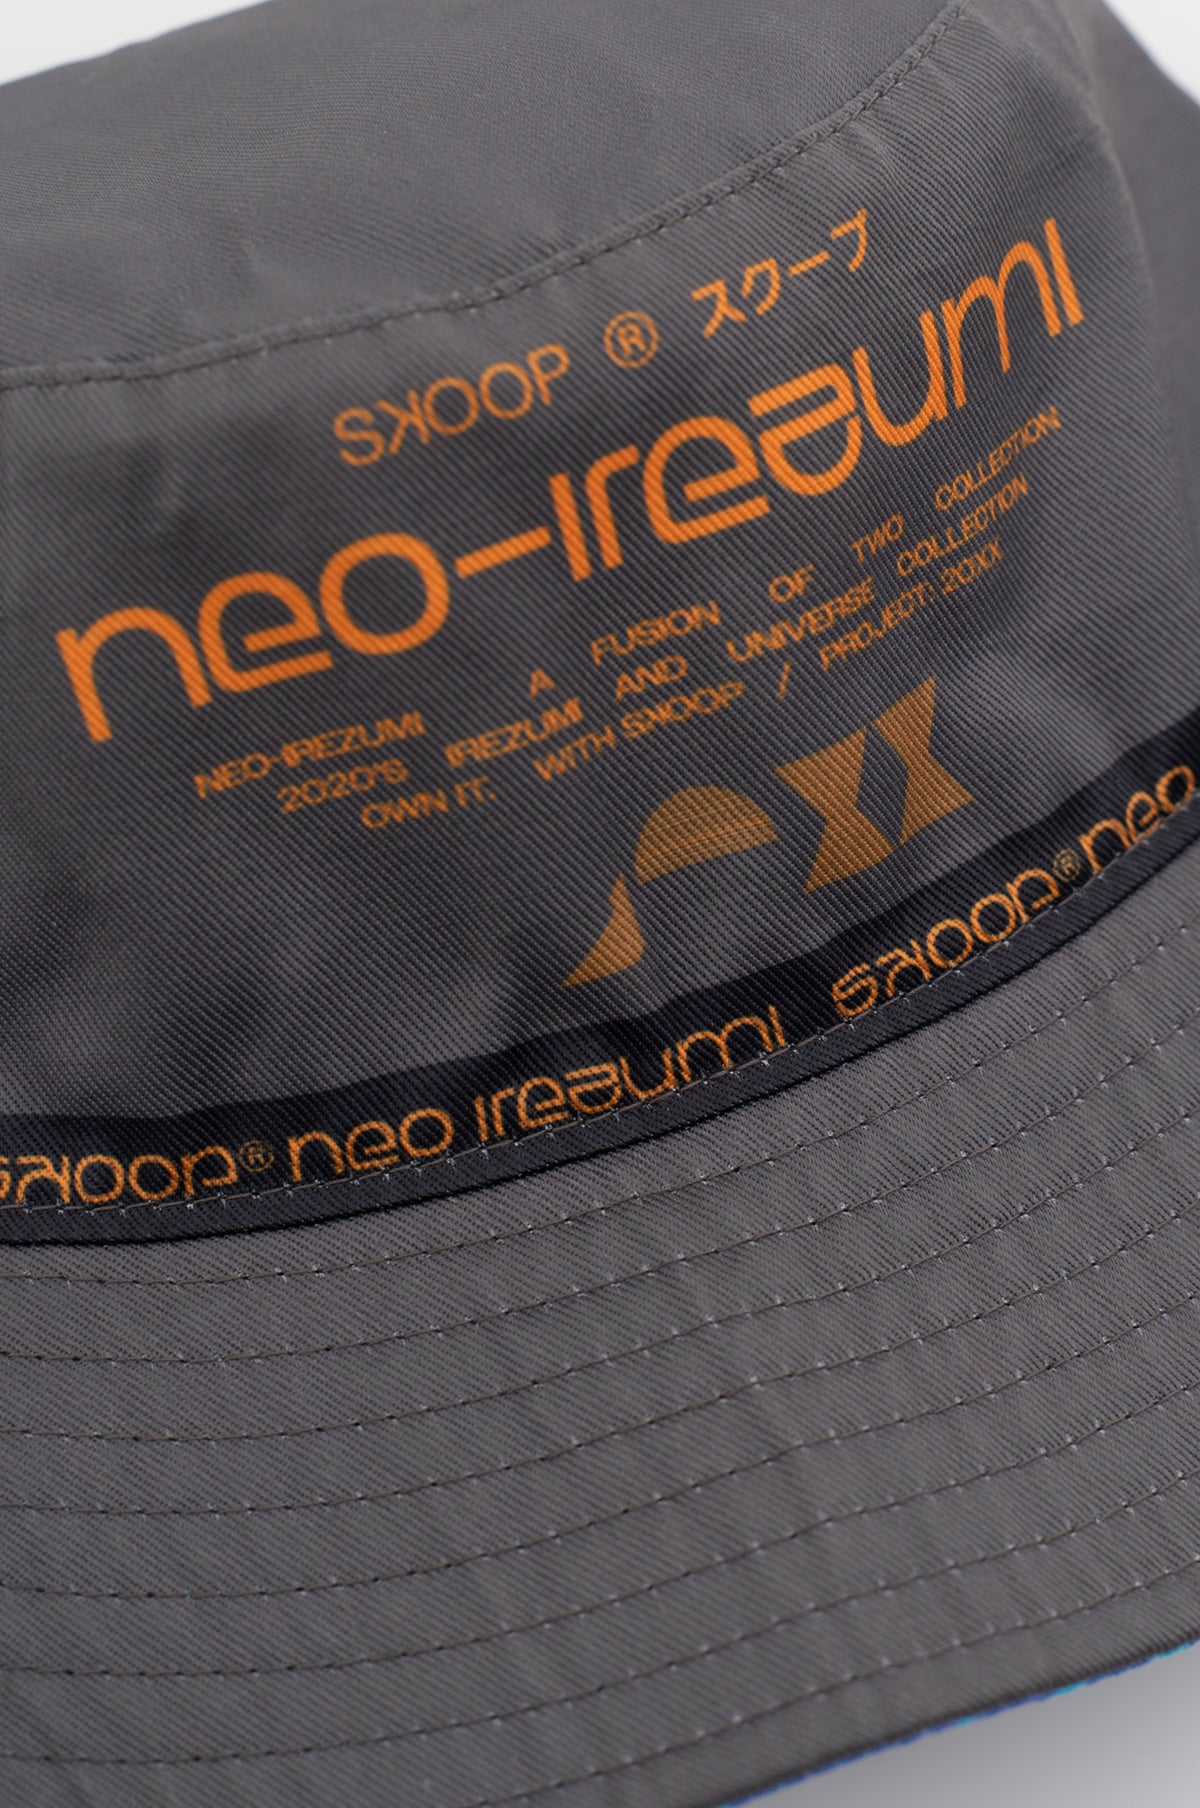 SKOOP® Neo Irezumi Fusion Reversible Bucket Hat - SKOOP Kommunity